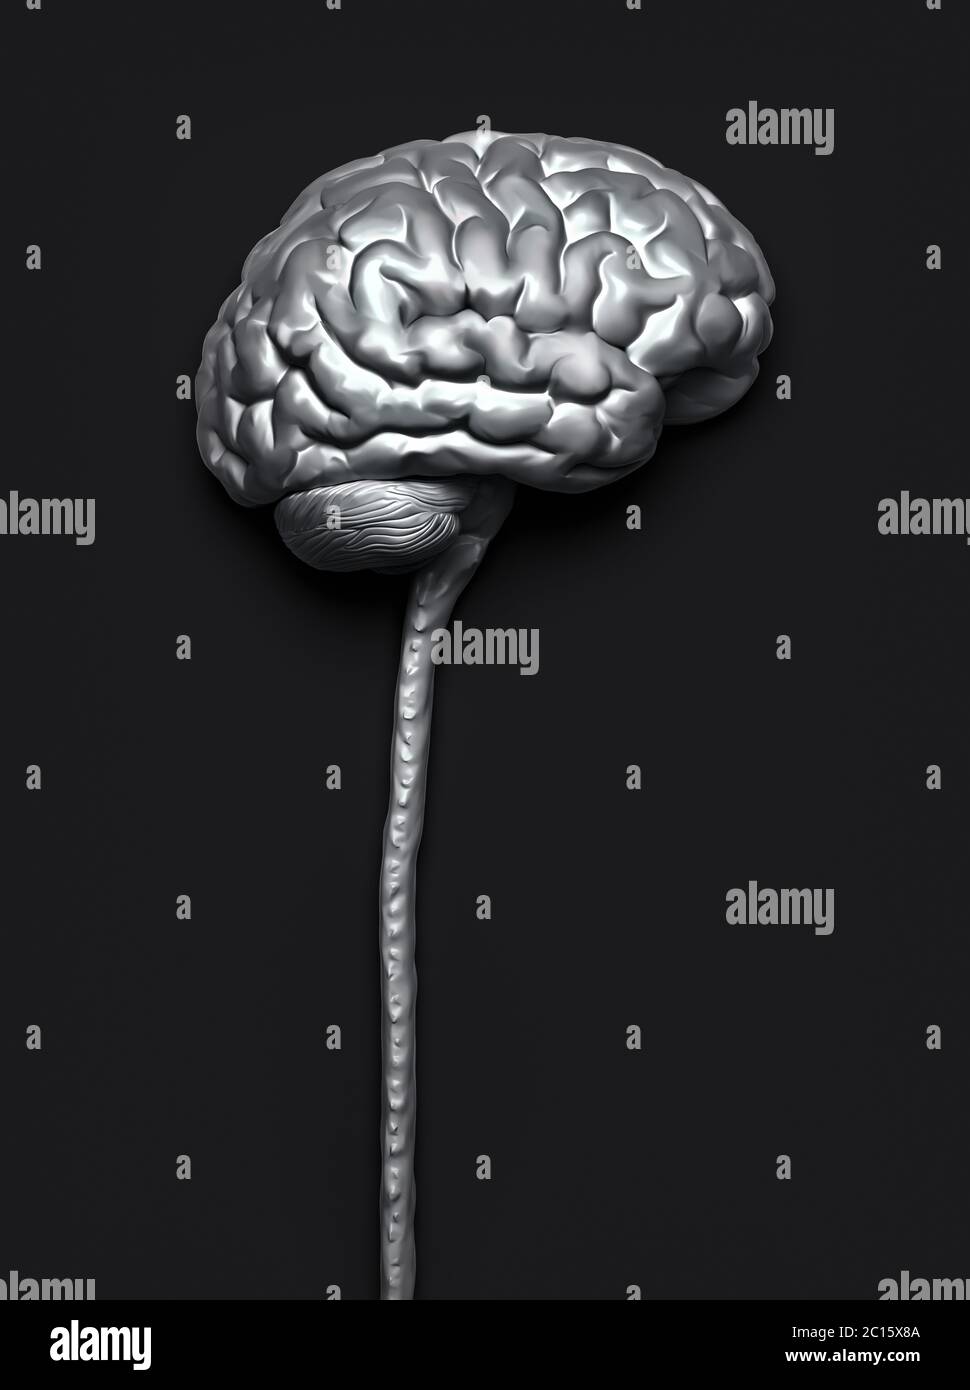 Zentrales Nervensystem. Gehirn und Rückenmark mit Clipping-Pfad enthalten. Konzeptionelle 3D-Darstellung des Gehirns. Stockfoto